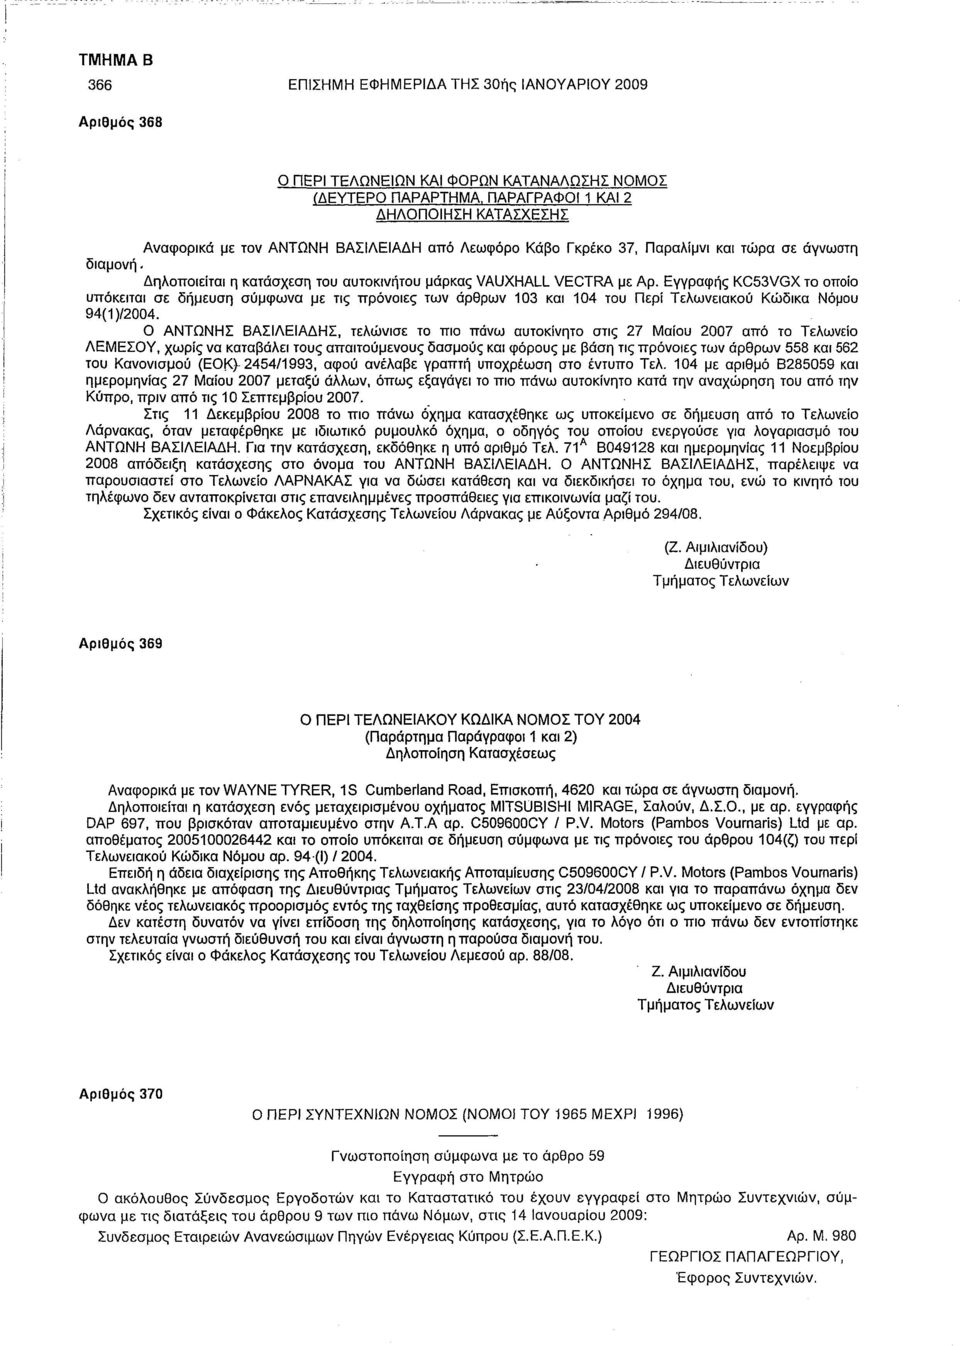 Εγγραφής KC53VGX το οποίο υπόκειται σε δήμευση σύμφωνα με τις πρόνοιες των άρθρων 103 και 104 του Περί Τελωνειακού Κώδικα Νόμου 94(1)/2004.